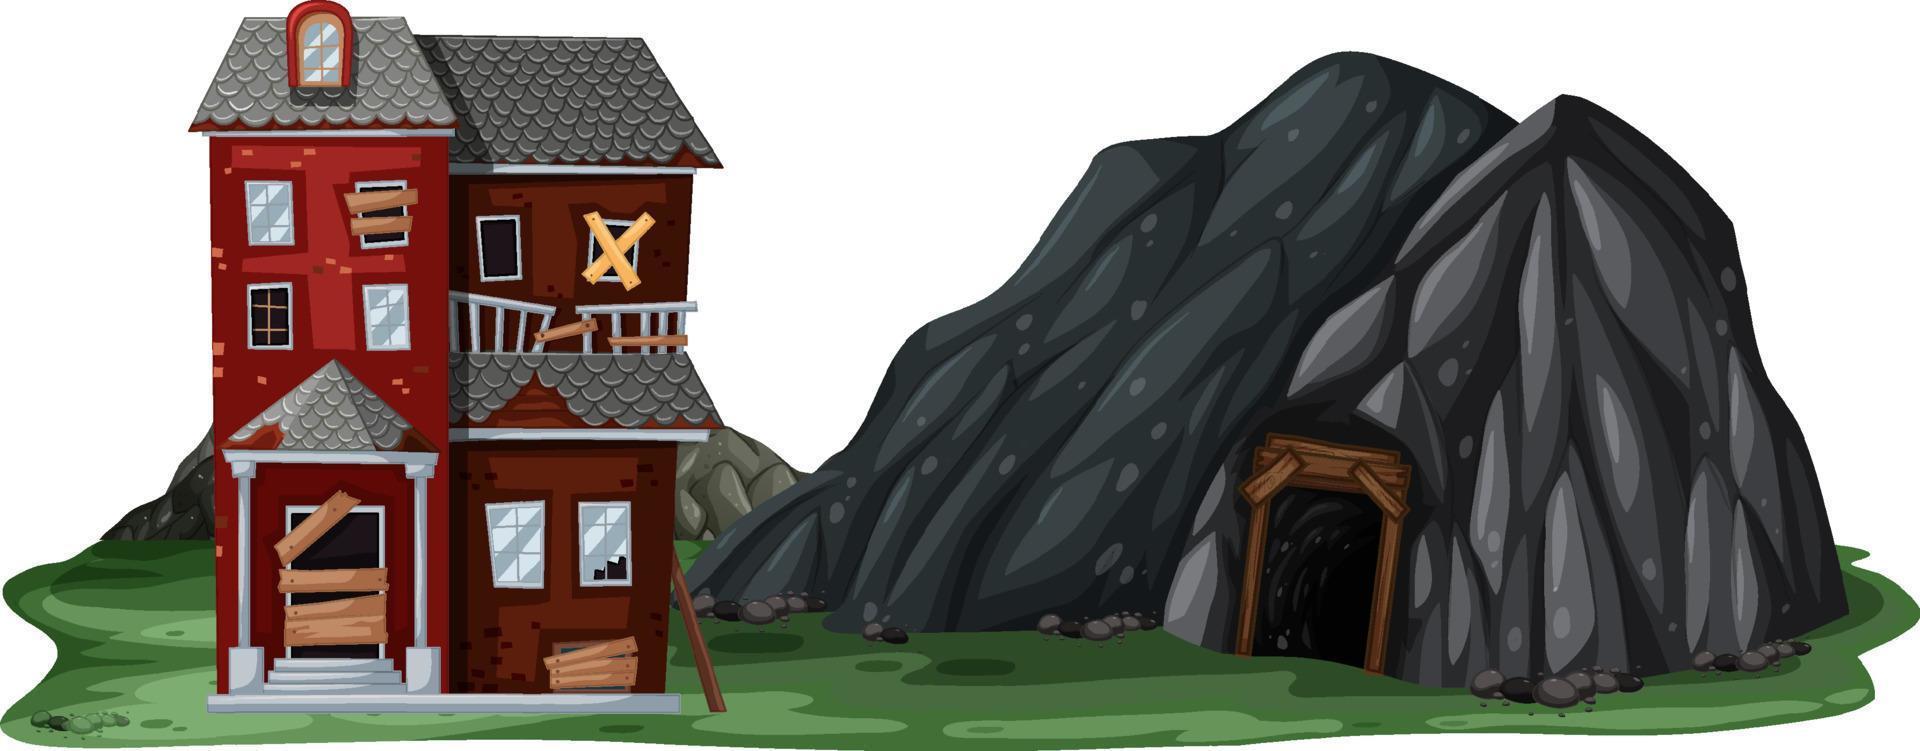 een verlaten huis met een rotsgrot op een witte achtergrond vector